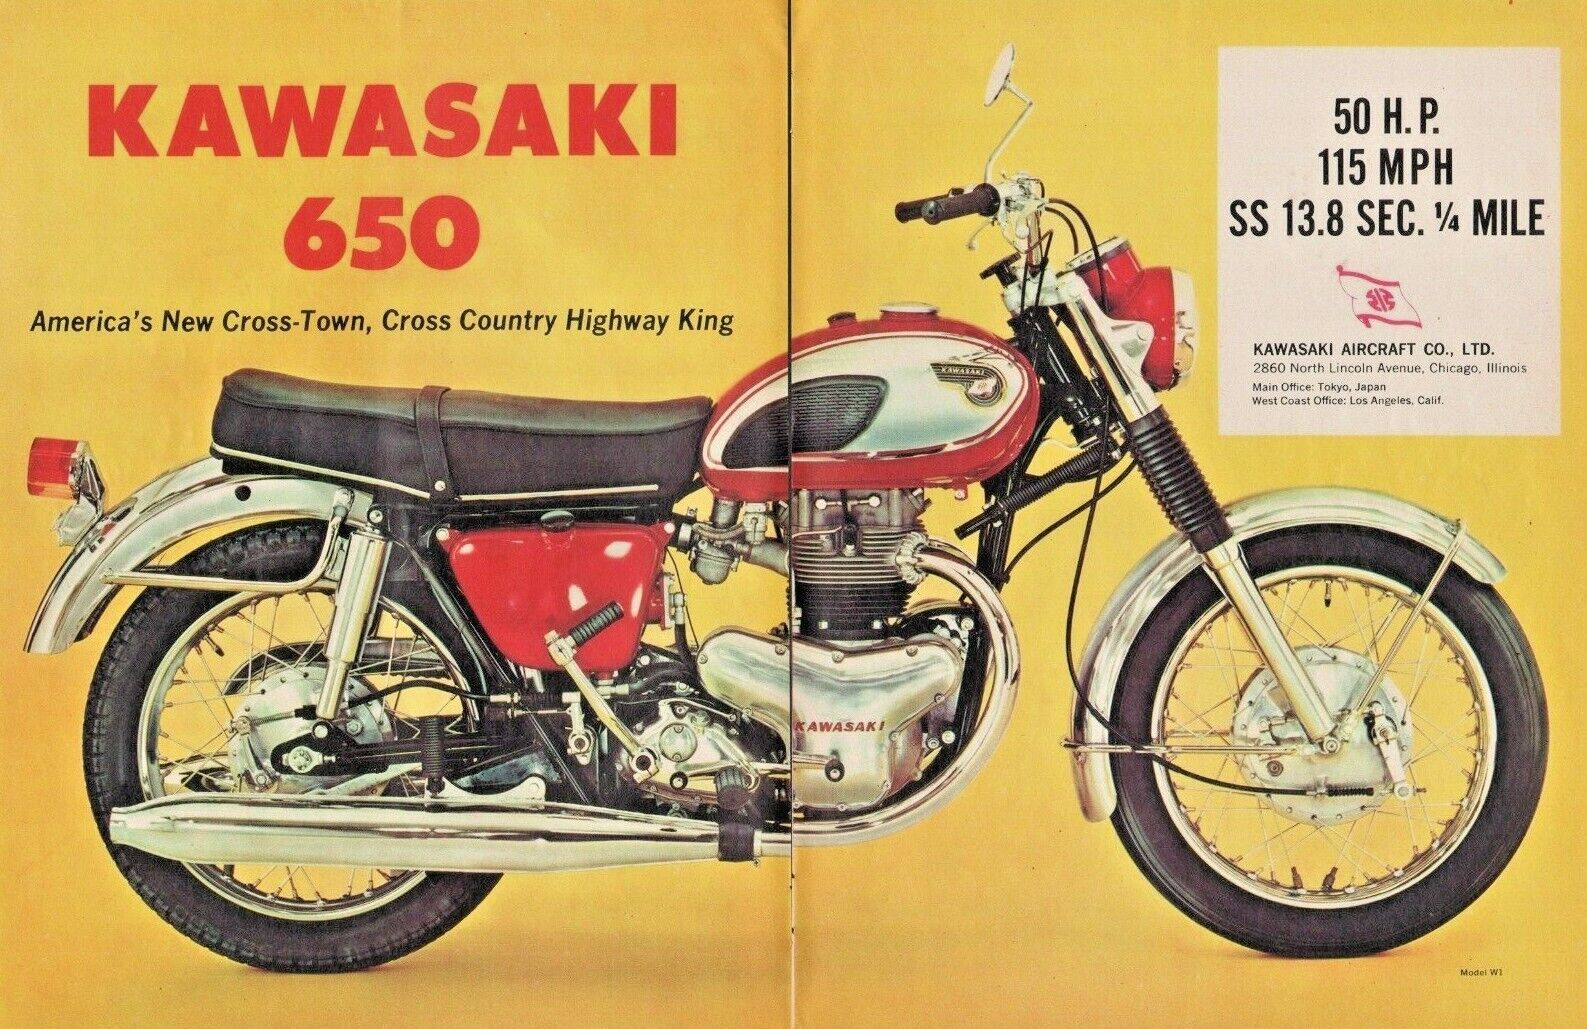 1967 Kawasaki 650 - 2-page Vintage Motorcycle Ad